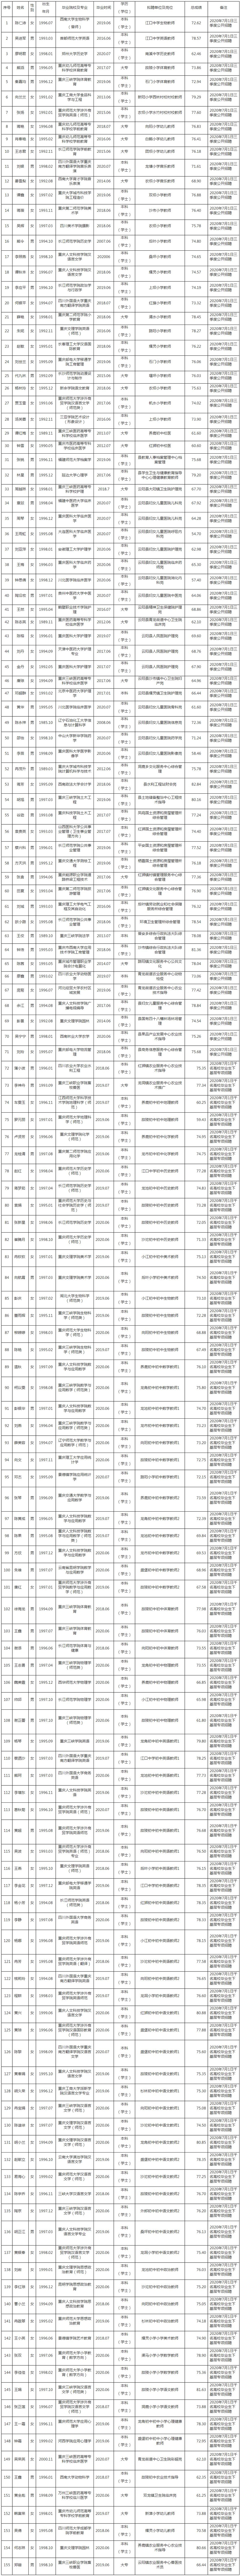 云阳县2020年公开招聘事业单位工作人员拟聘人员公示表